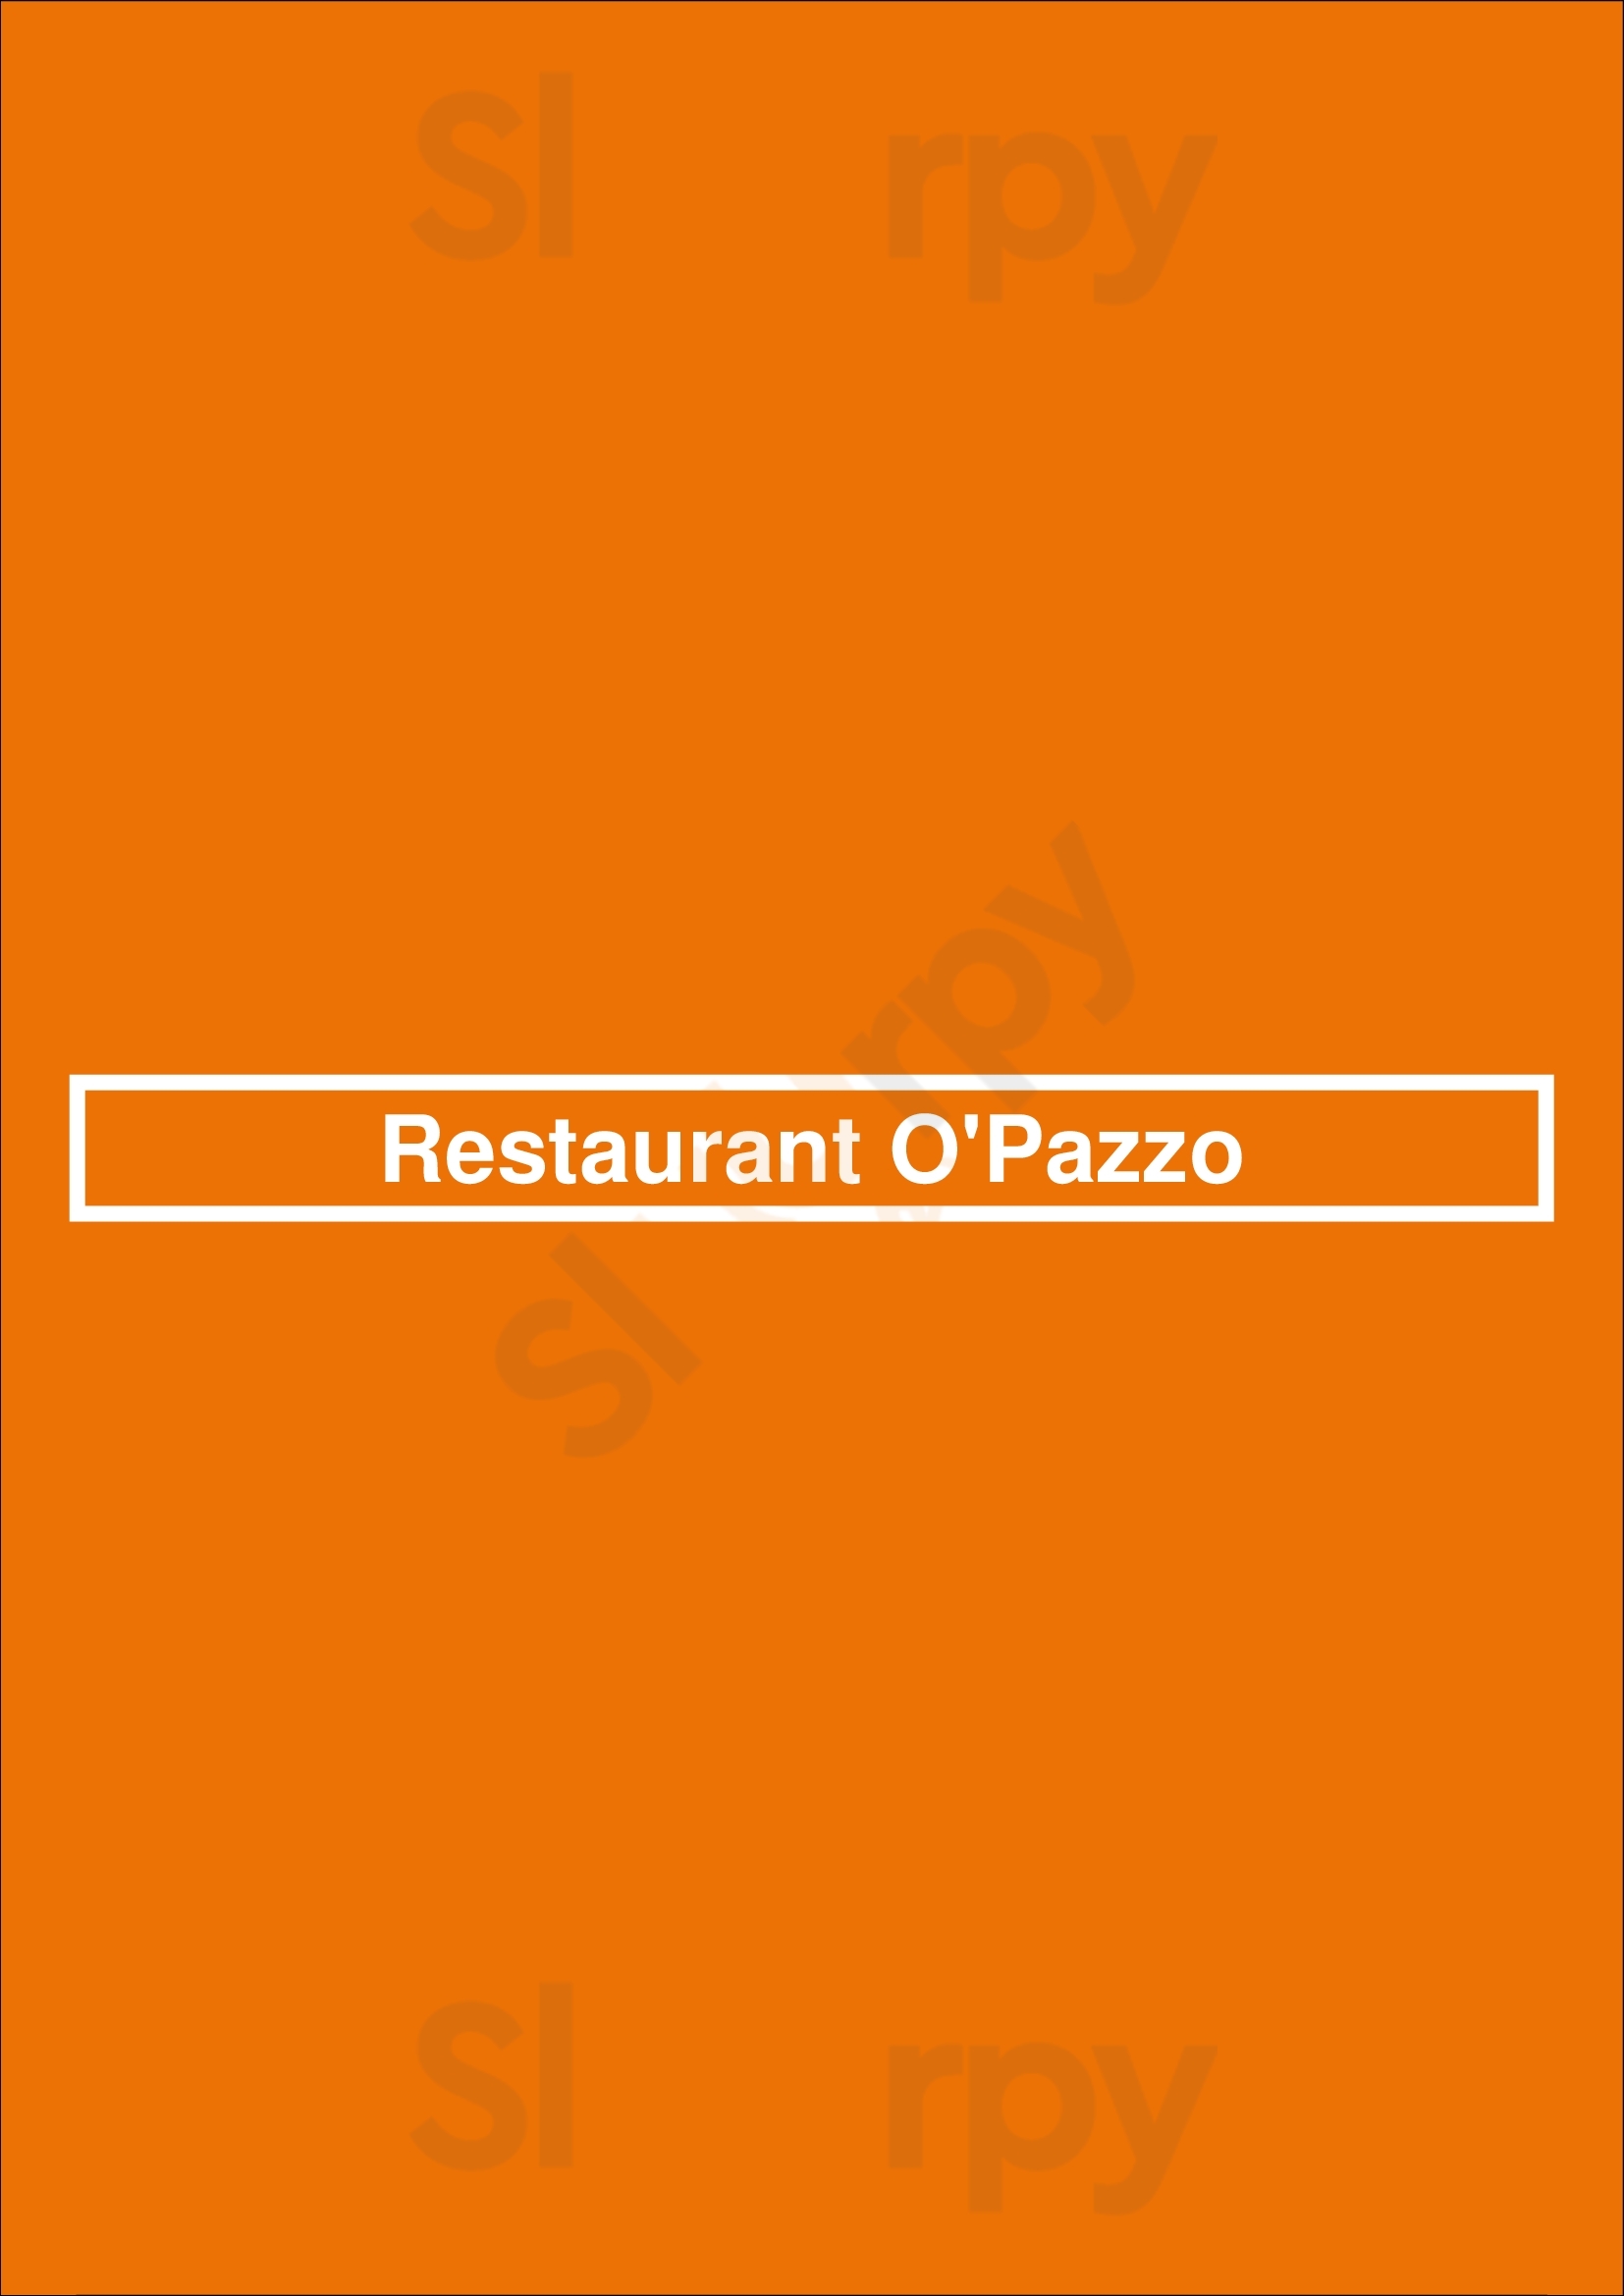 Restaurant O'pazzo Rotterdam Menu - 1